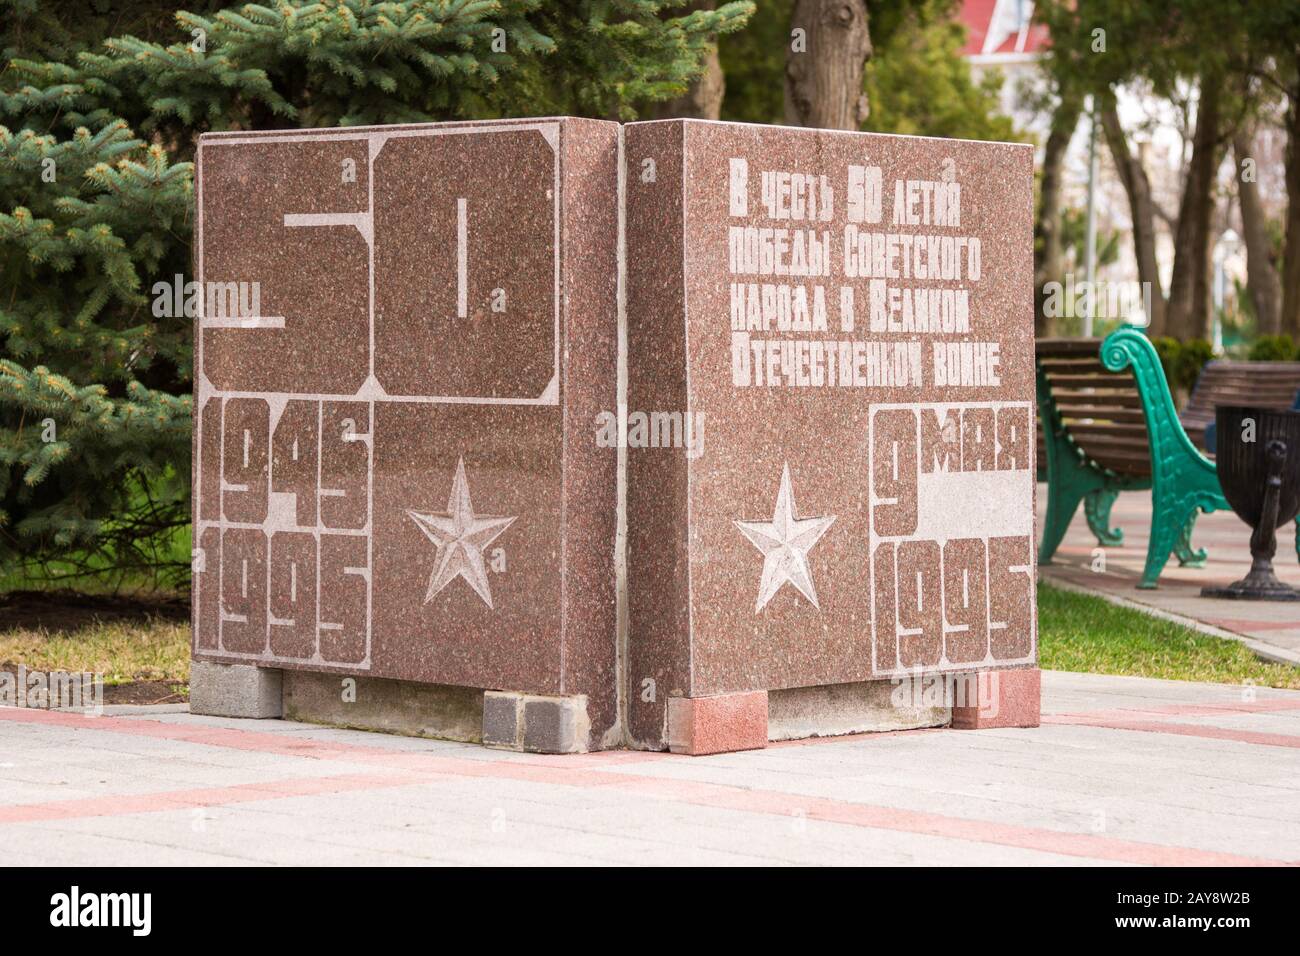 Аnapa, Russia - 5 marzo 2016: Monumento nella vista cubo in onore del 50° anniversario della vittoria nella Grande Patriottica Foto Stock